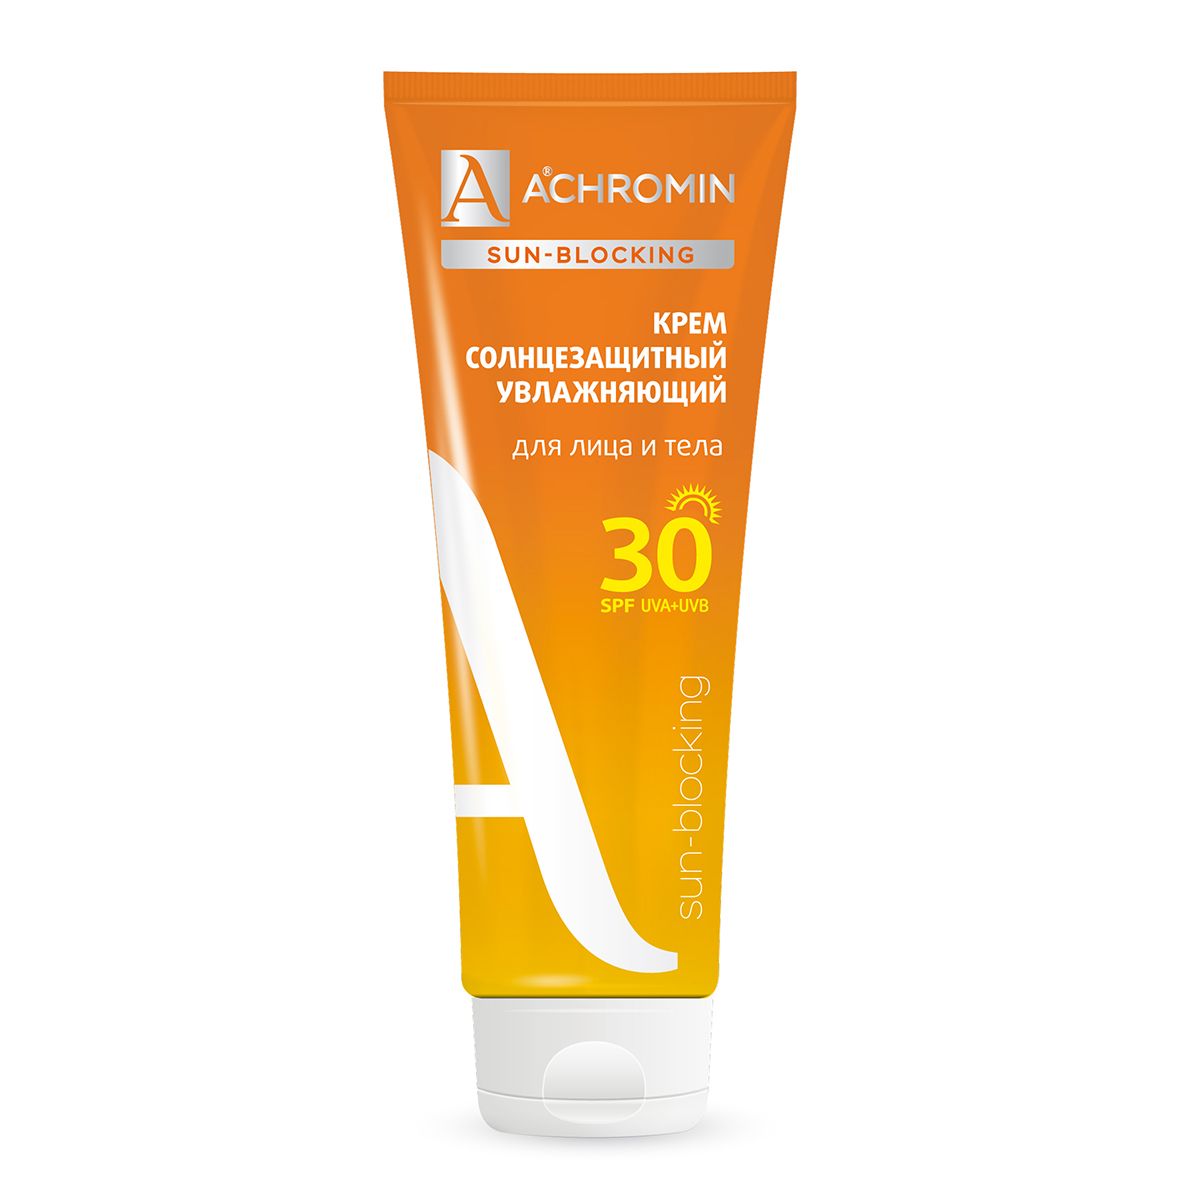 Купить Крем солнцезащитный Achromin для лица и тела SPF 30, 250 мл